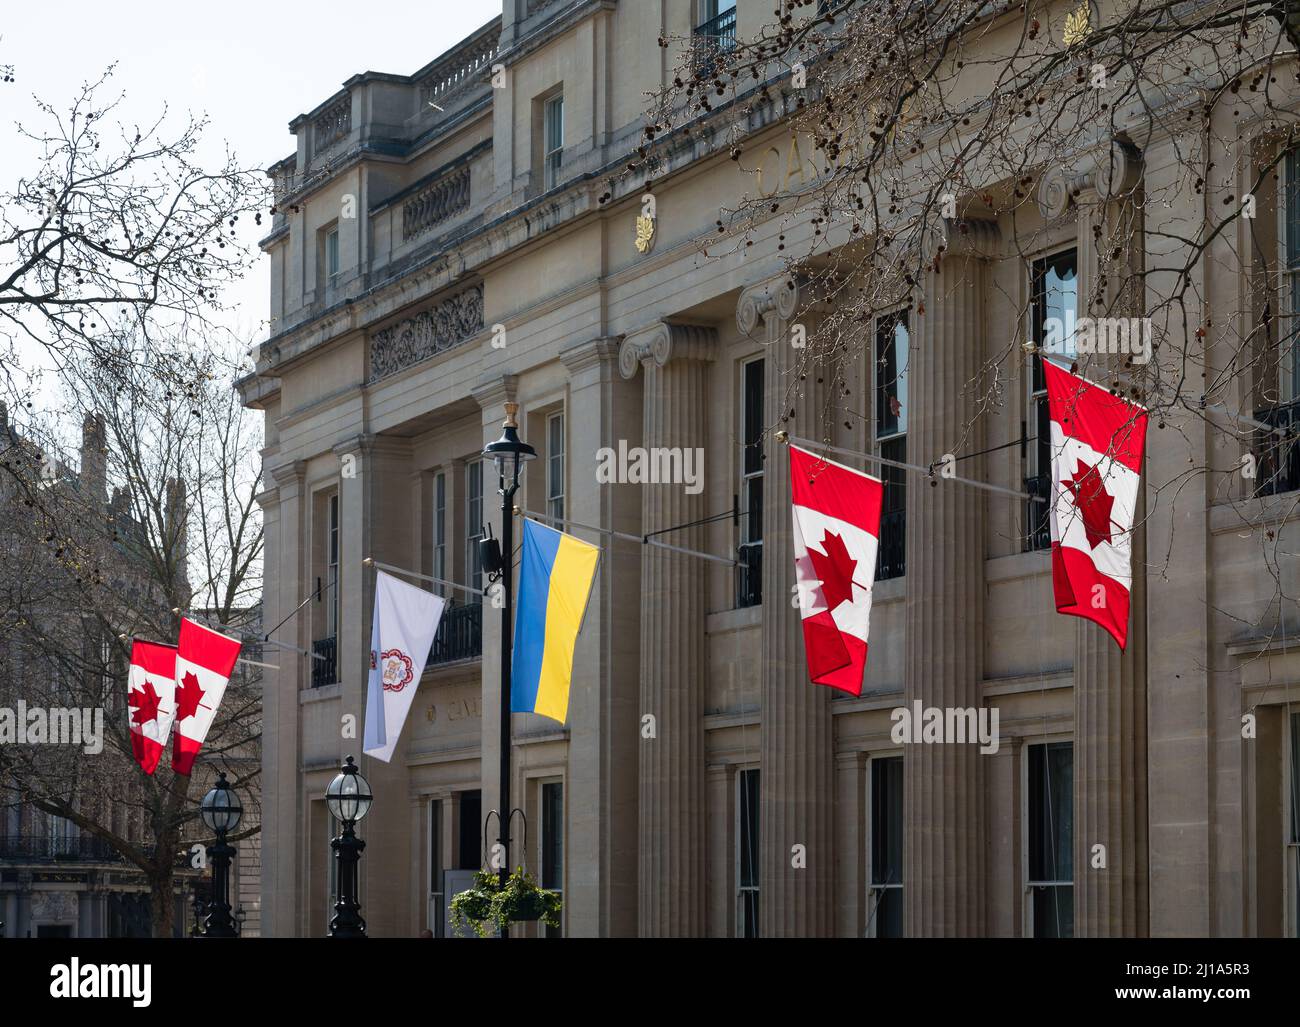 Bandiere nazionali di Canada e Ucraina, e una bandiera speciale che segna il Giubileo del platino della regina Elisabetta ll, montato sulla casa del Canada. Londra, Inghilterra. Foto Stock